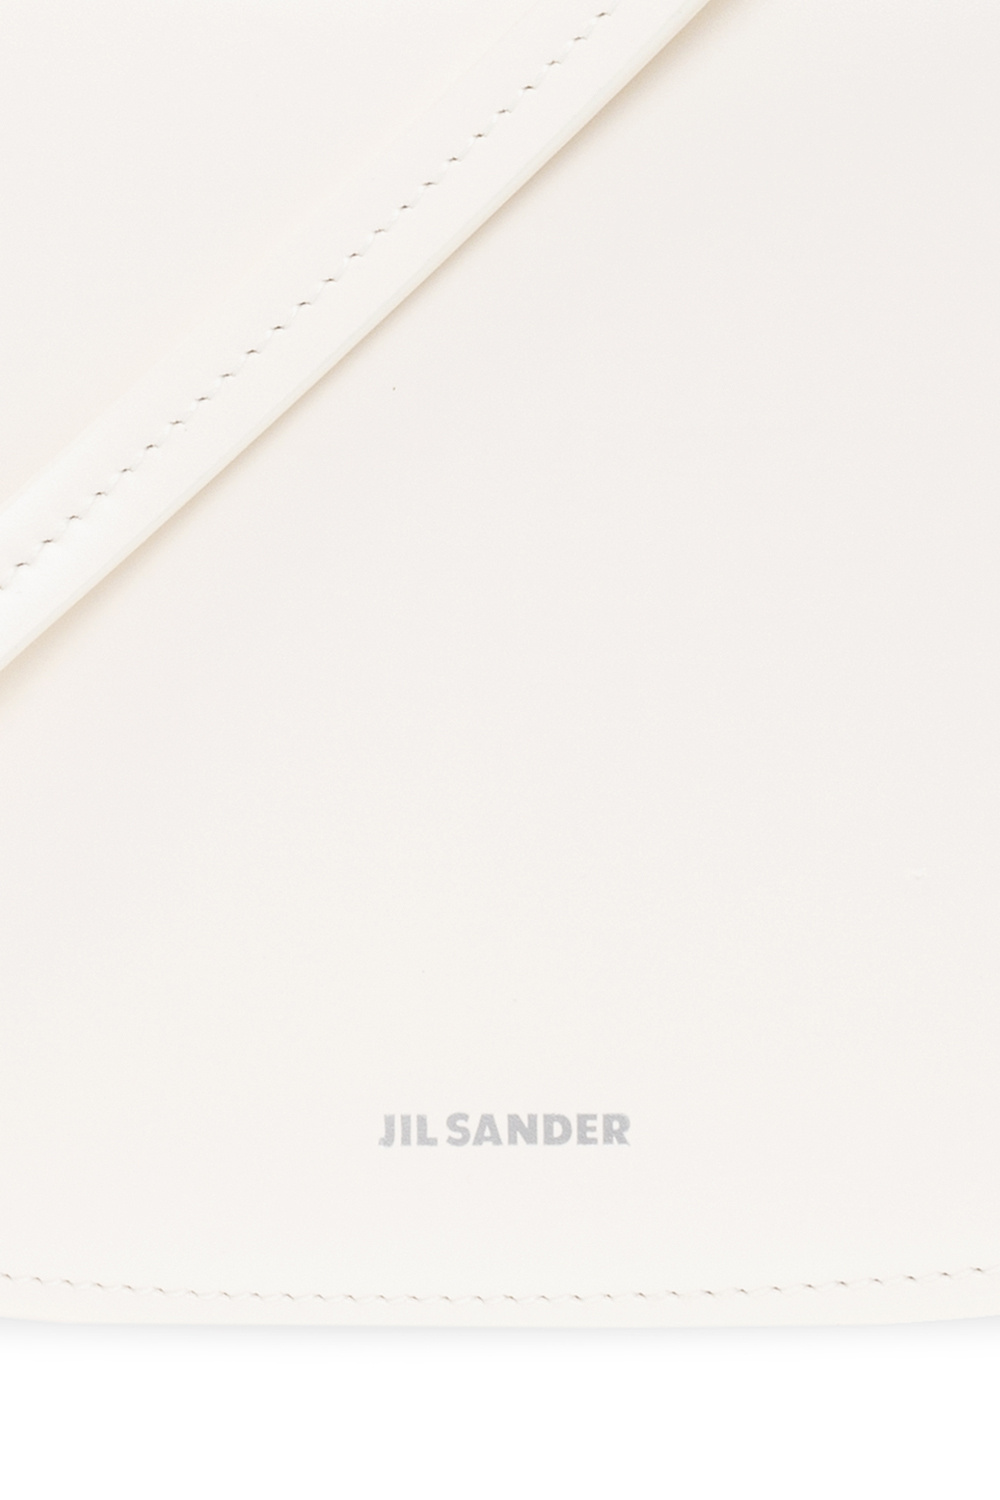 JIL SANDER ‘Taos‘ shoulder bag